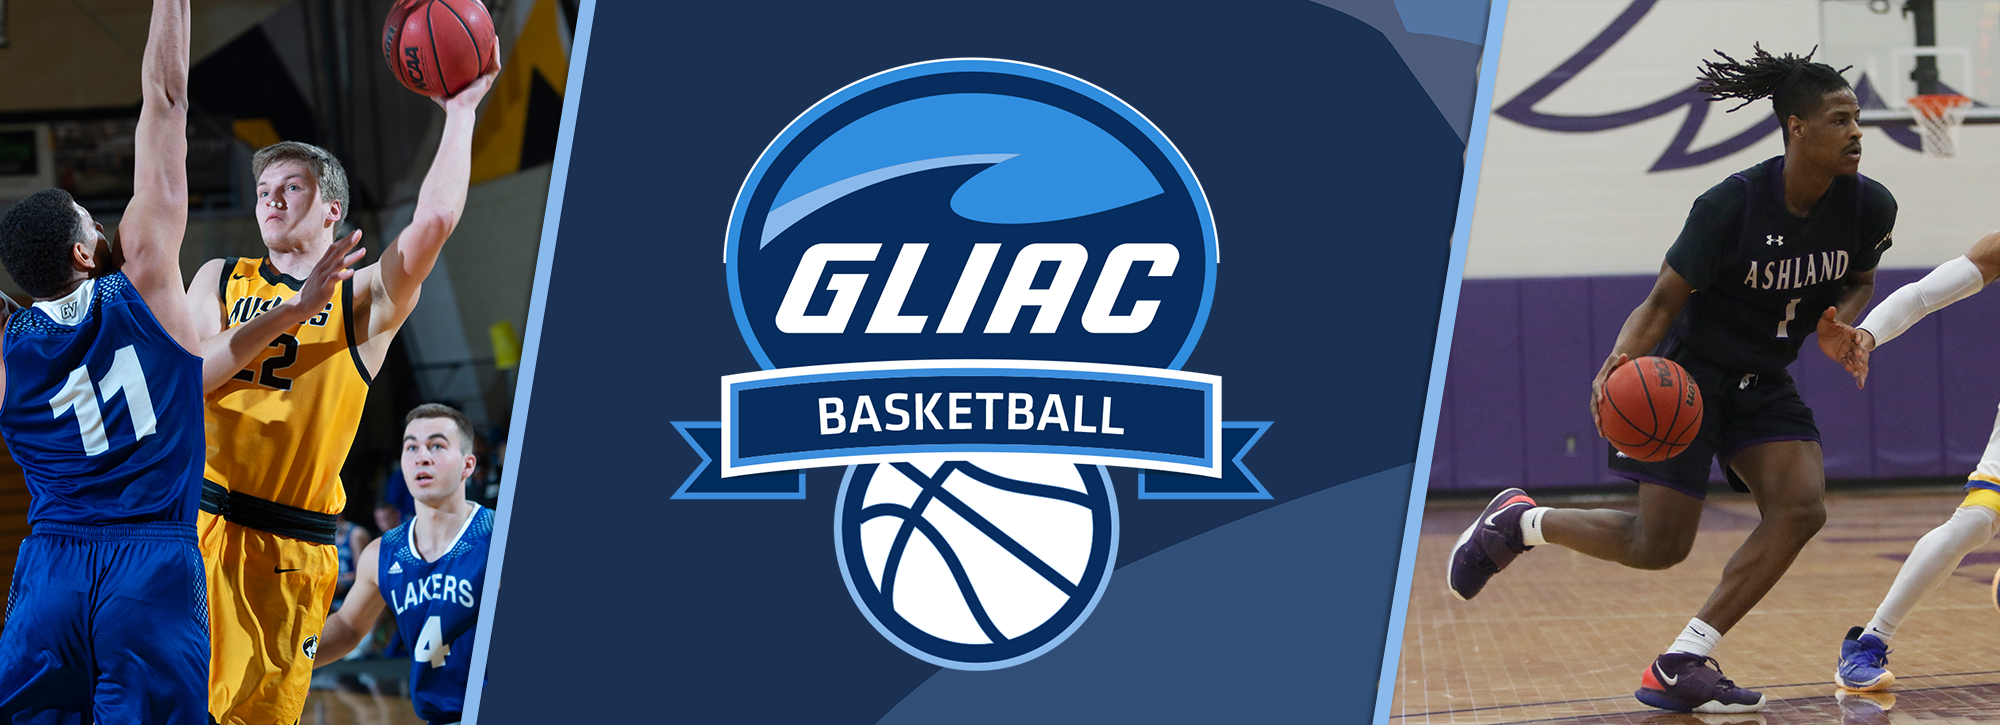 MTU's White, AU's Haraway Earn GLIAC Men's Basketball Players of the Week